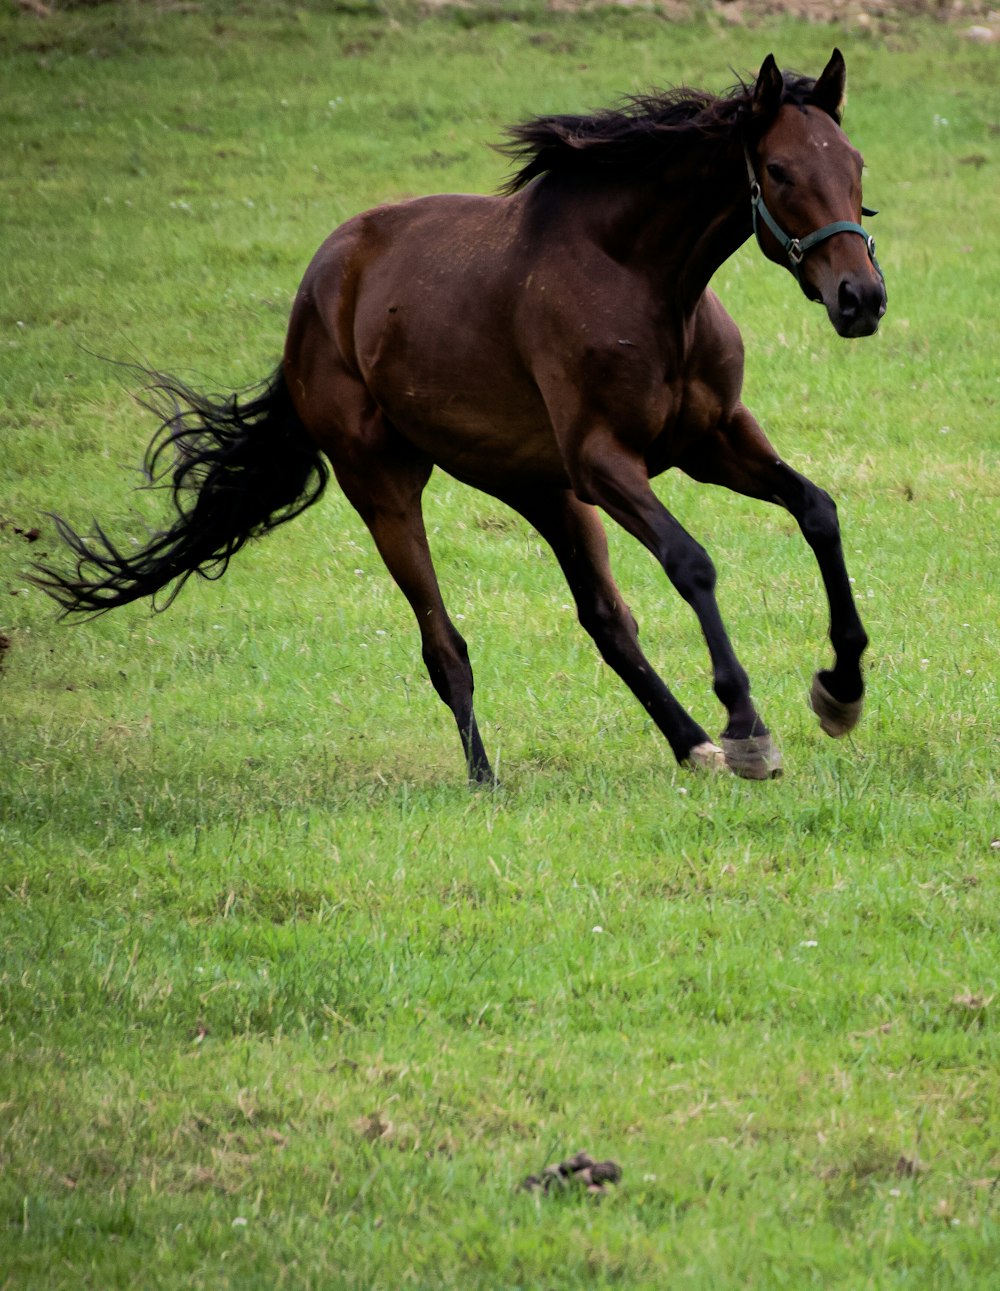 a brown horse running across a lush green field